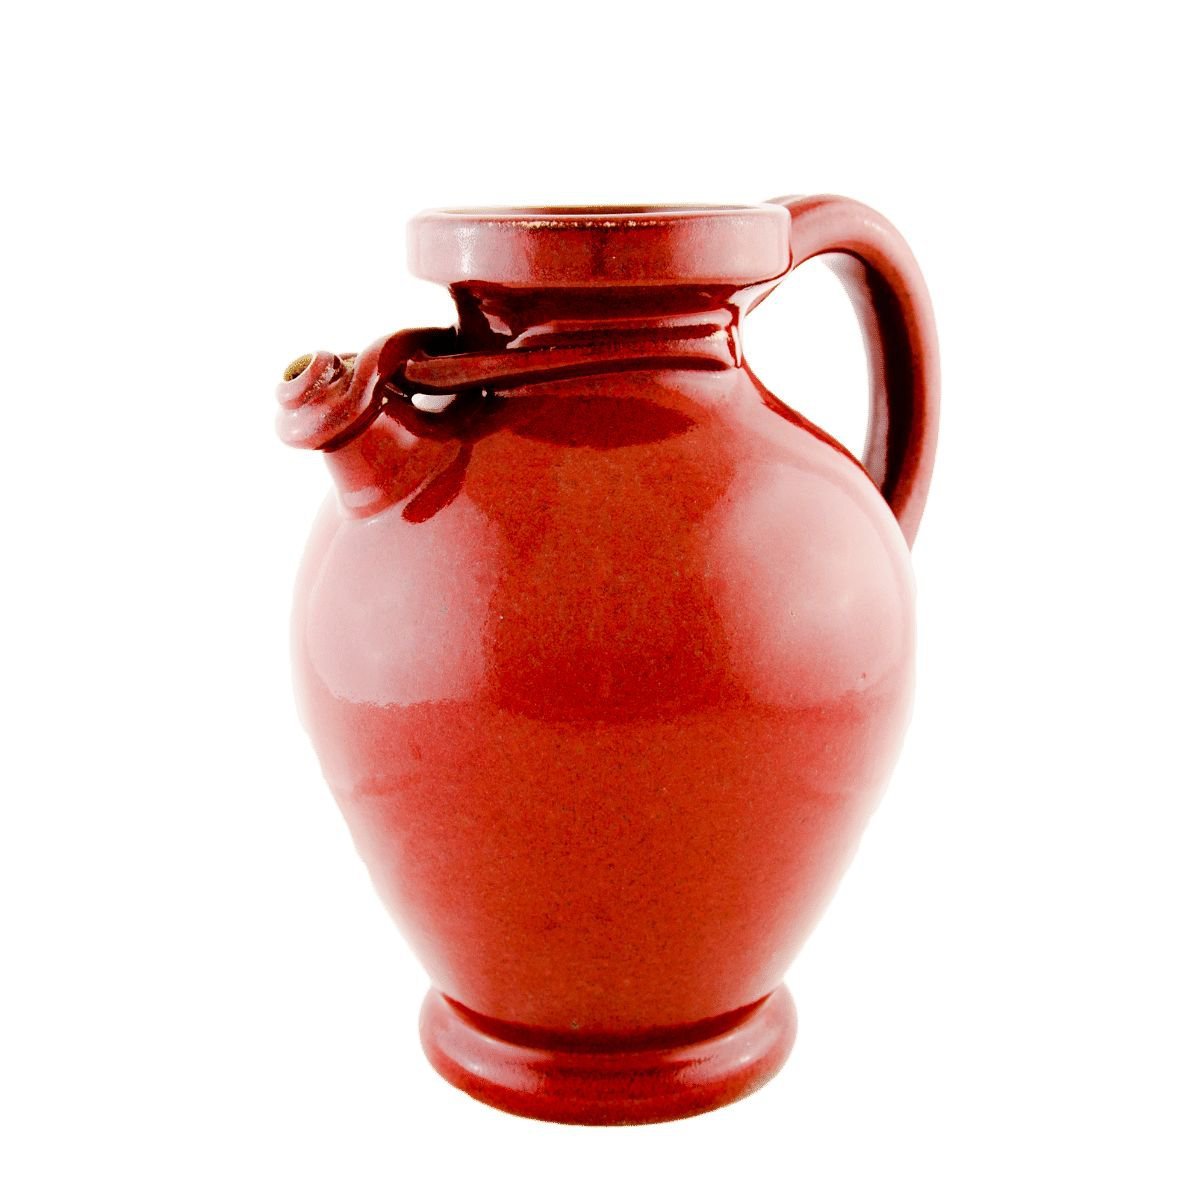 Jarra rústica em cerâmica Craquelê com tom avermelhado e acabamento estonado brilhante